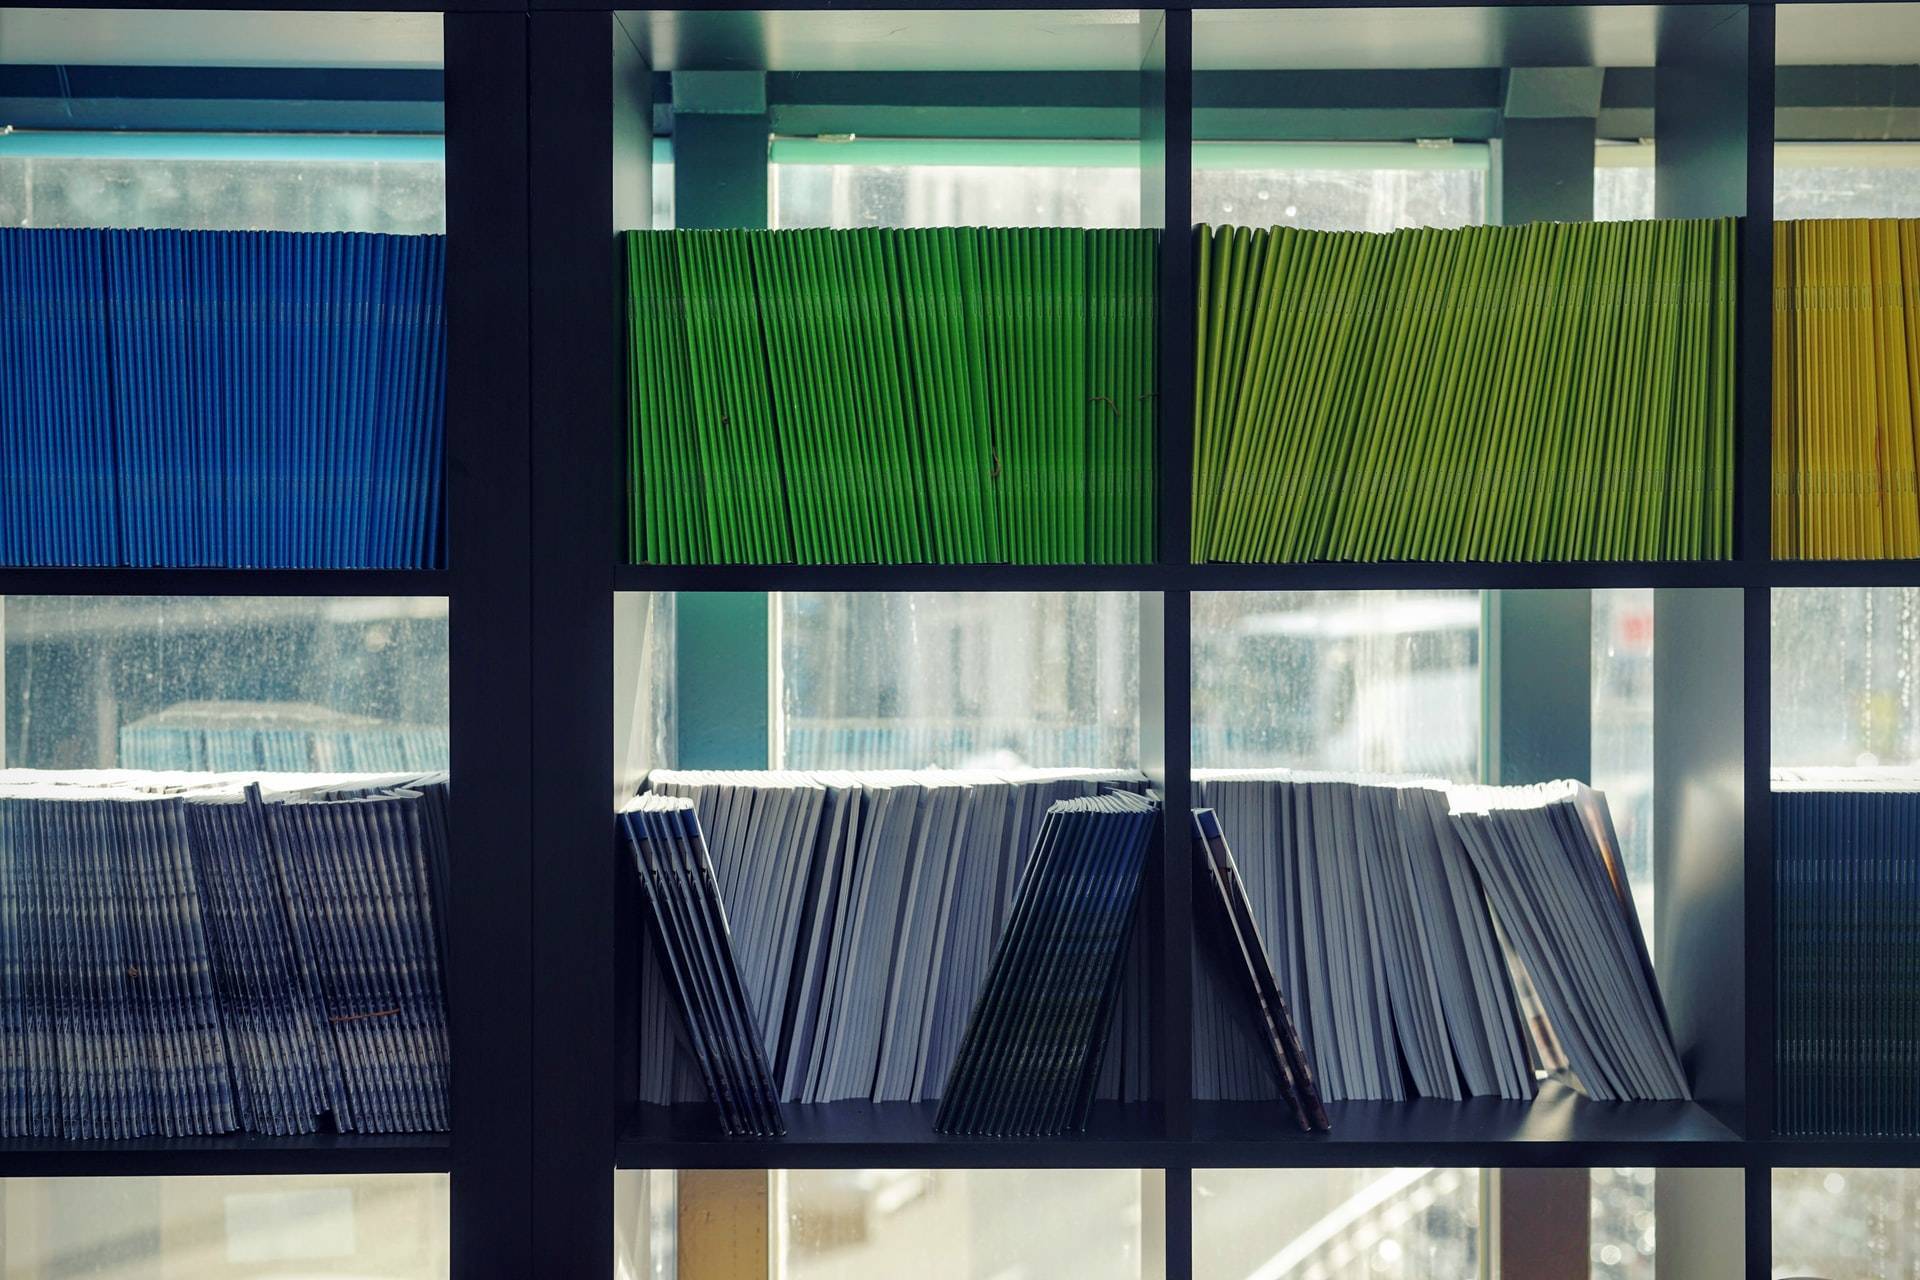 kolorowe foldery poukładane na półkach